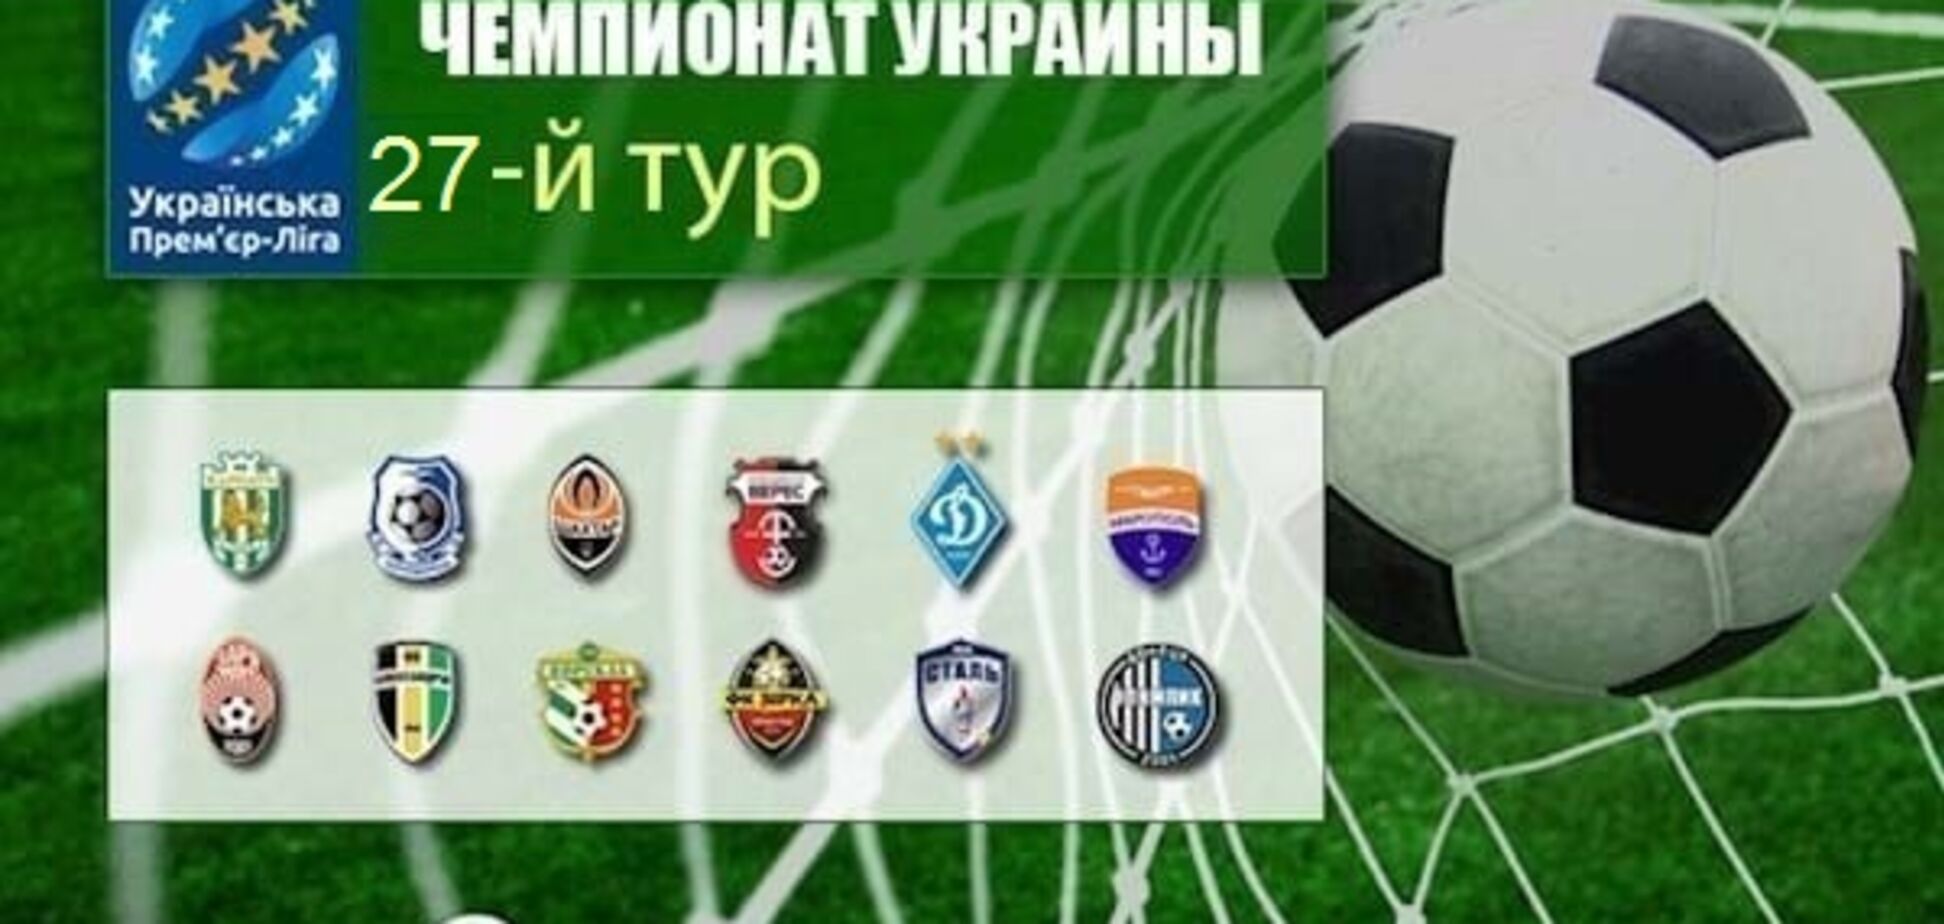 27-й тур чемпіонату України: результати, огляди, турнірна таблиця